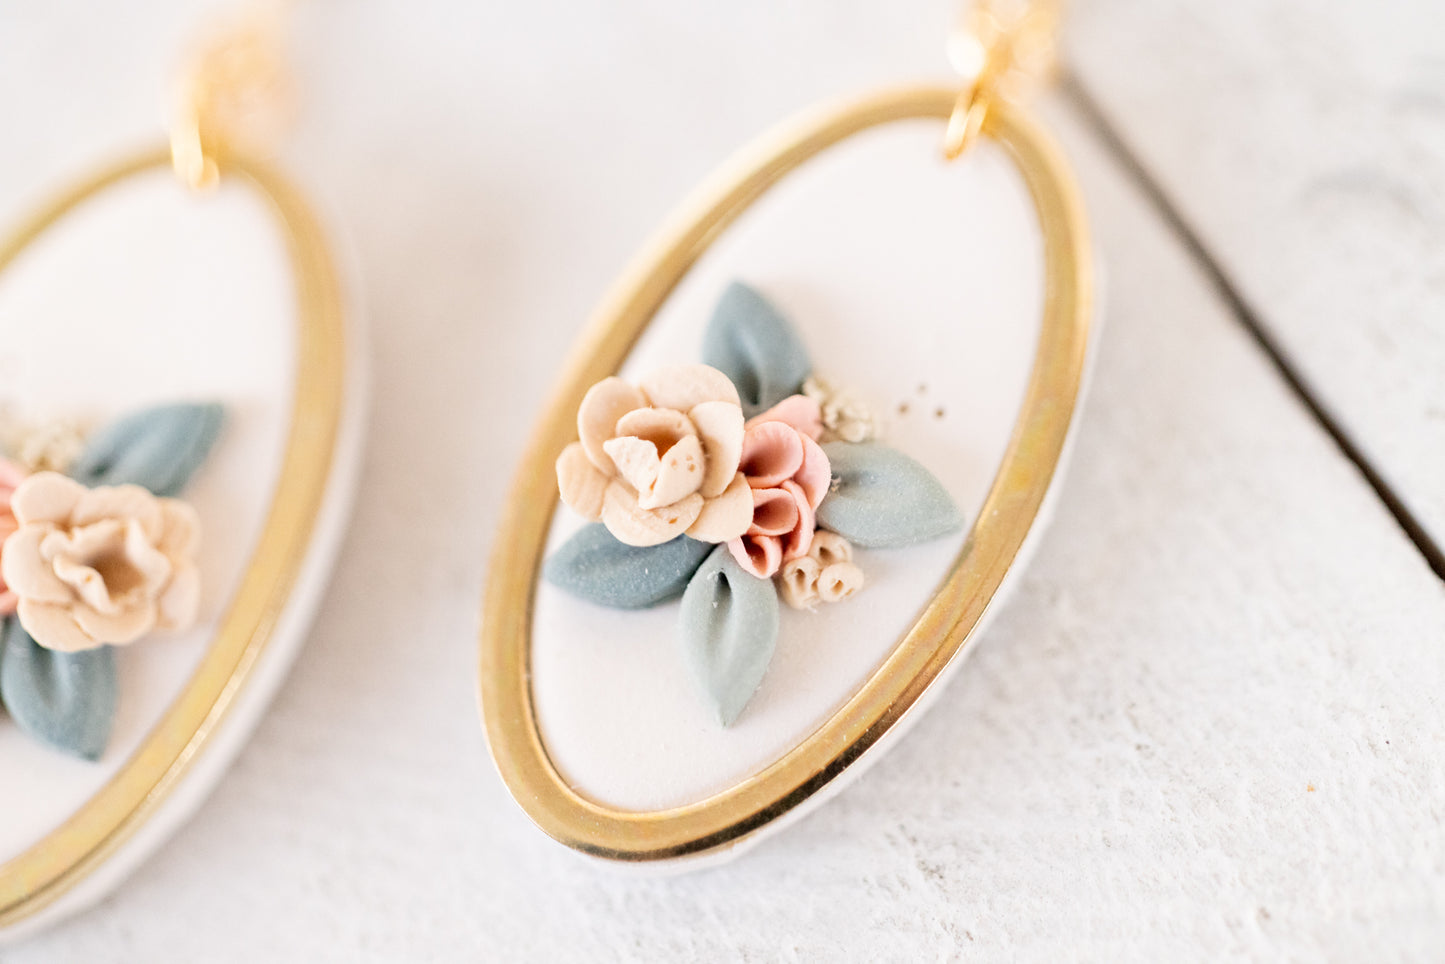 Oval Bouquet Earrings